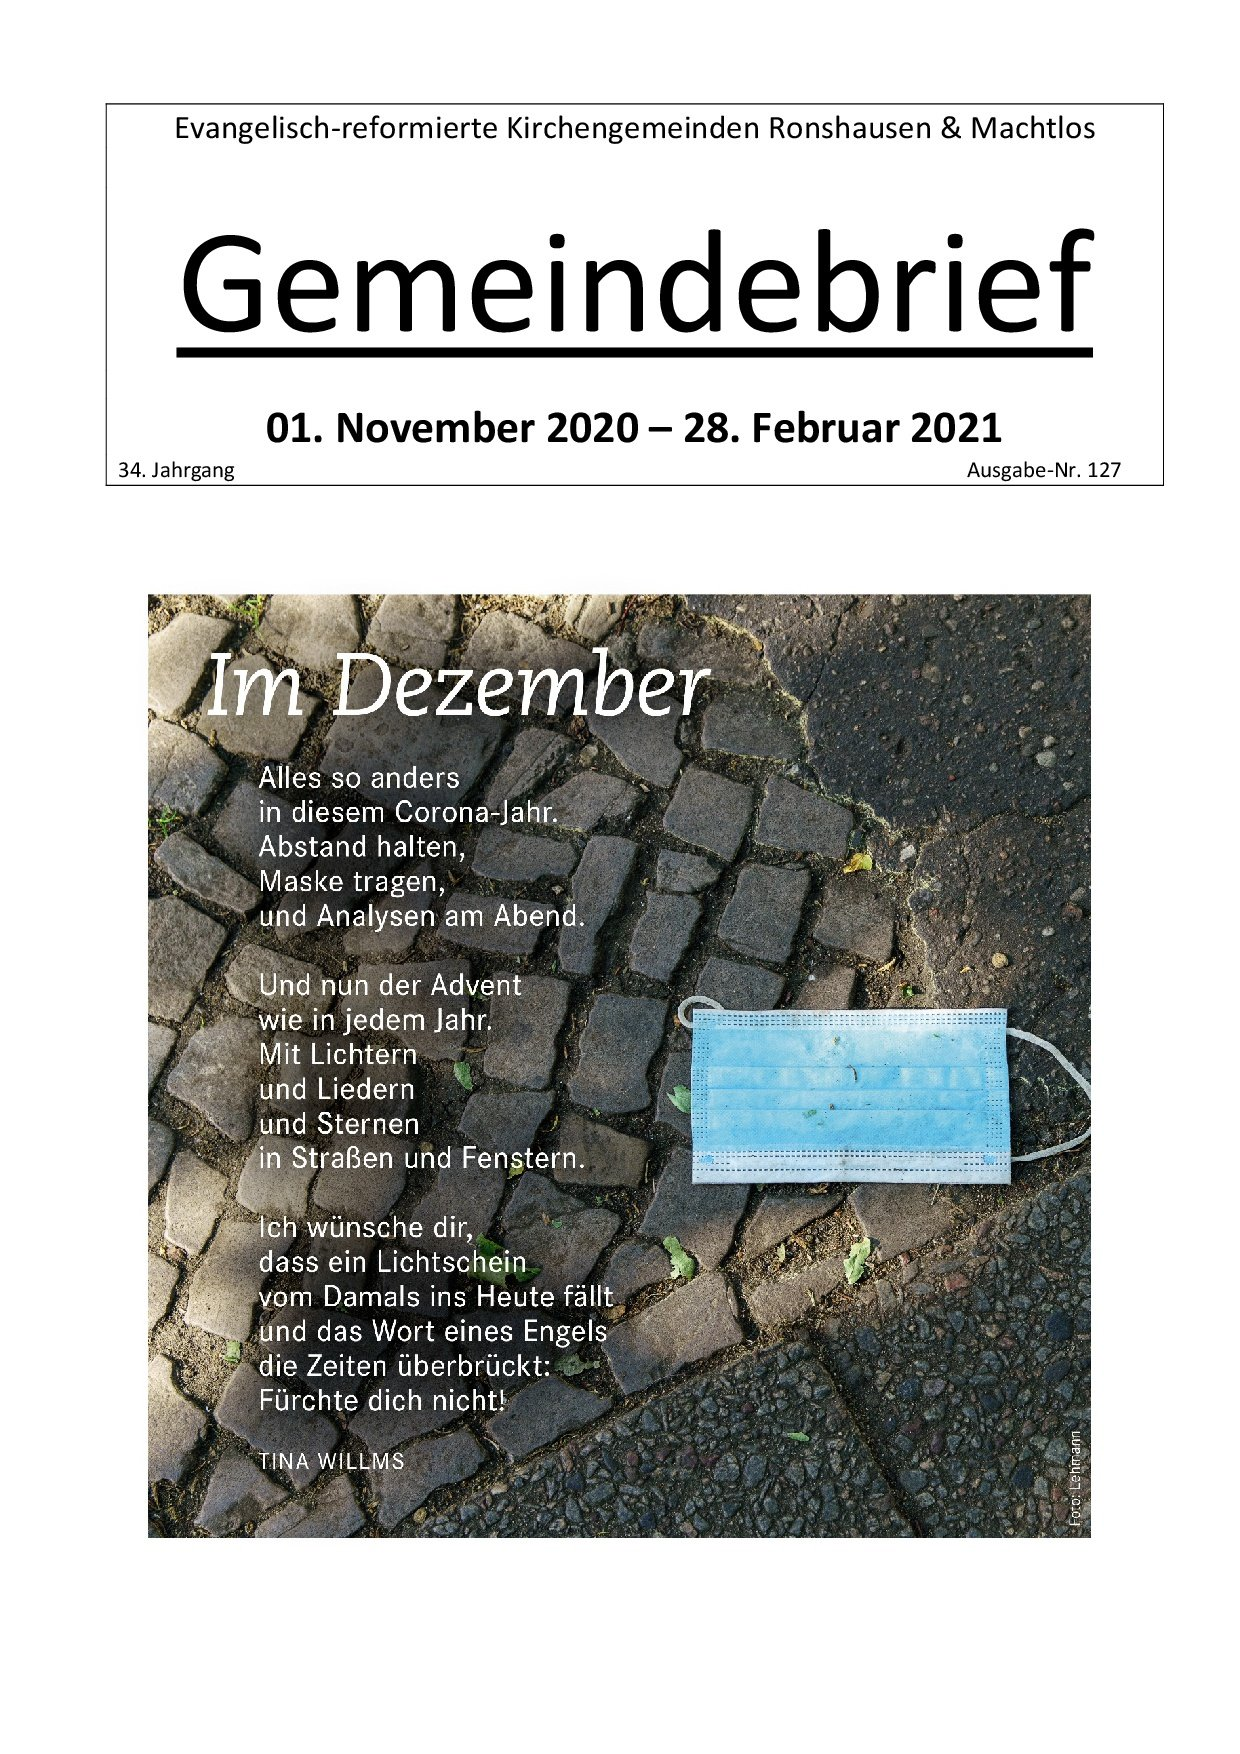 Gemeindebrief November 2020 - Februar 2021